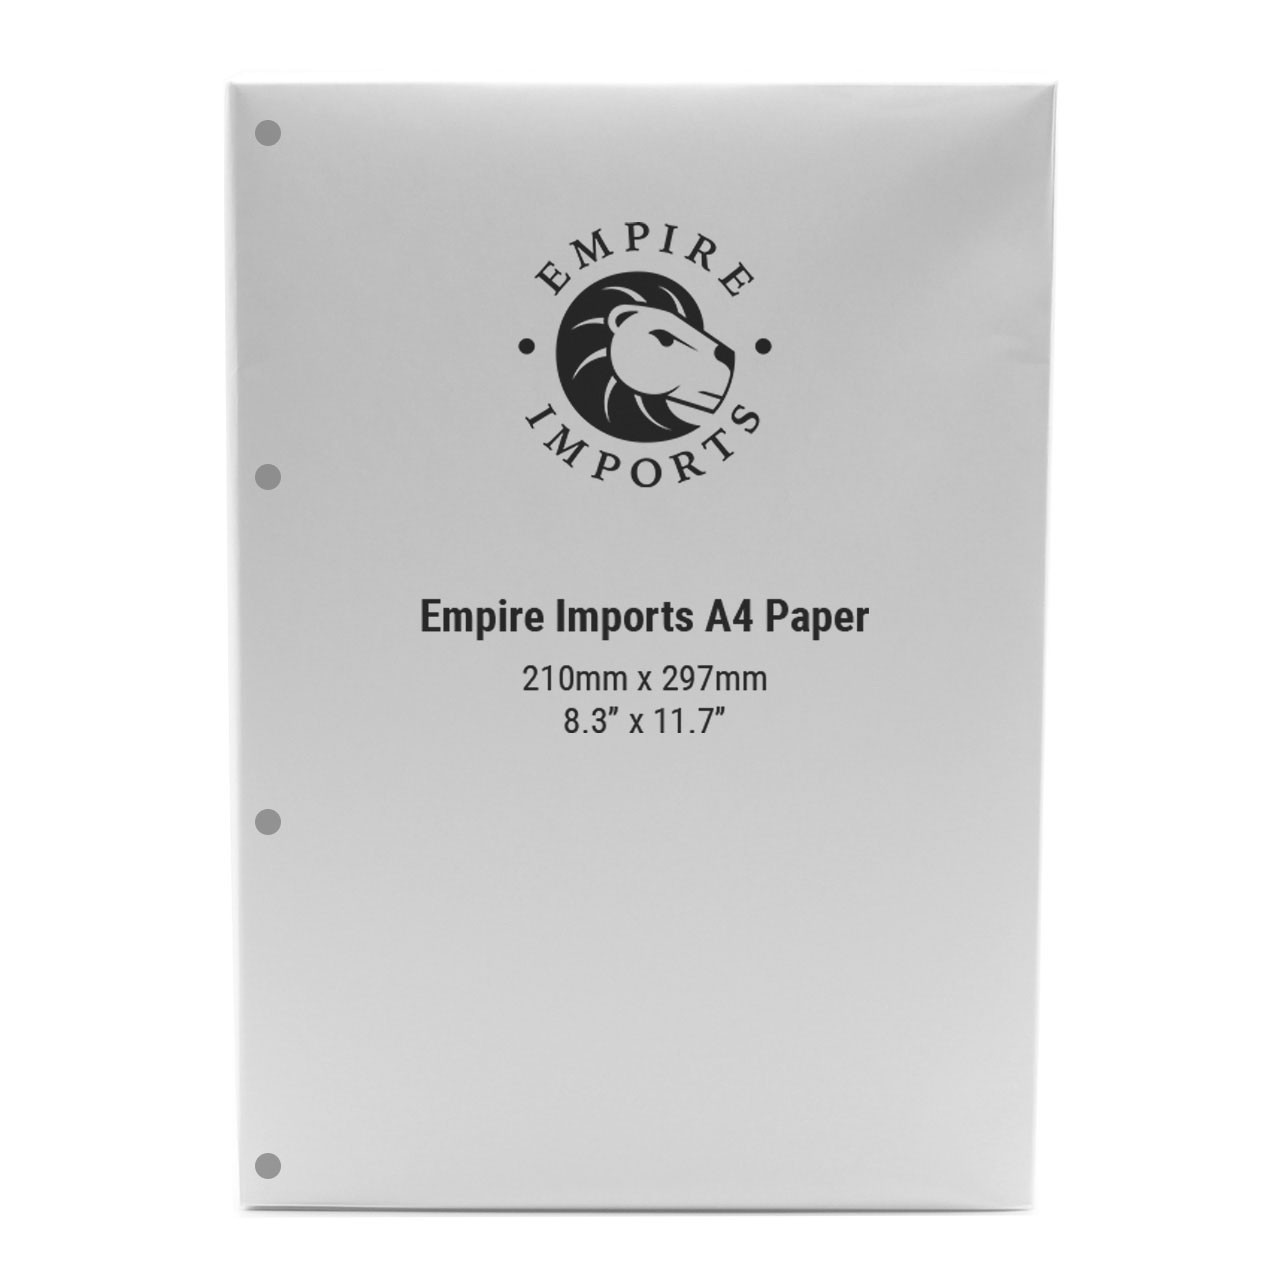 Multi-Purpose A3 Paper, 20 lb., 1 Case